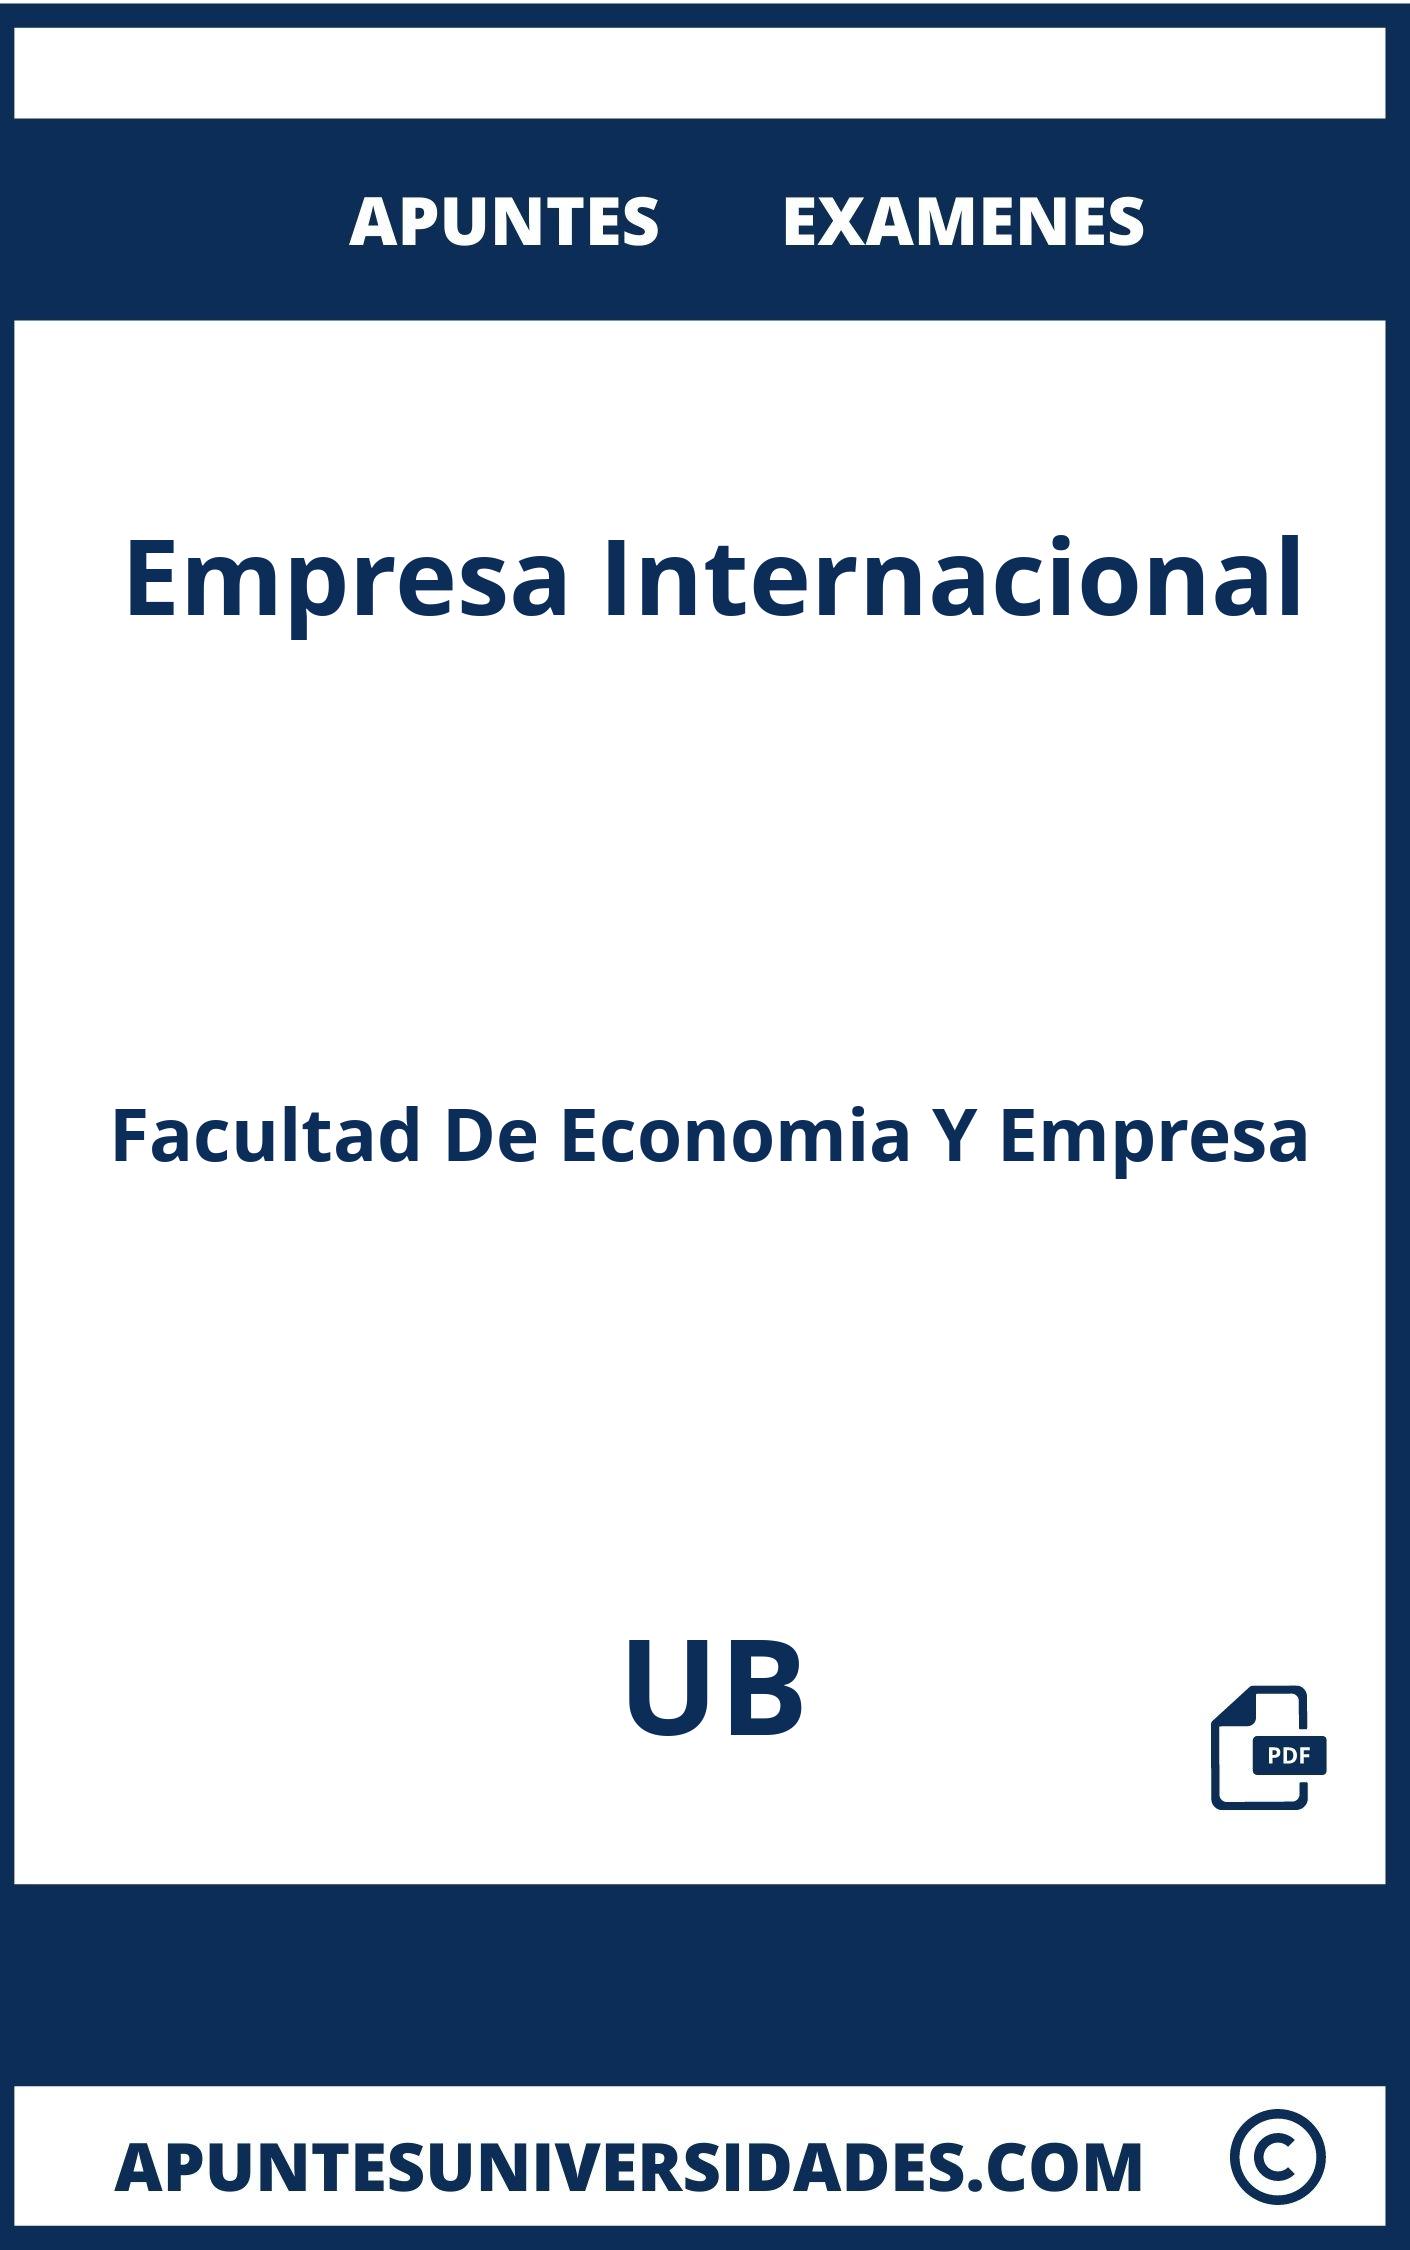 Examenes y Apuntes de Empresa Internacional UB